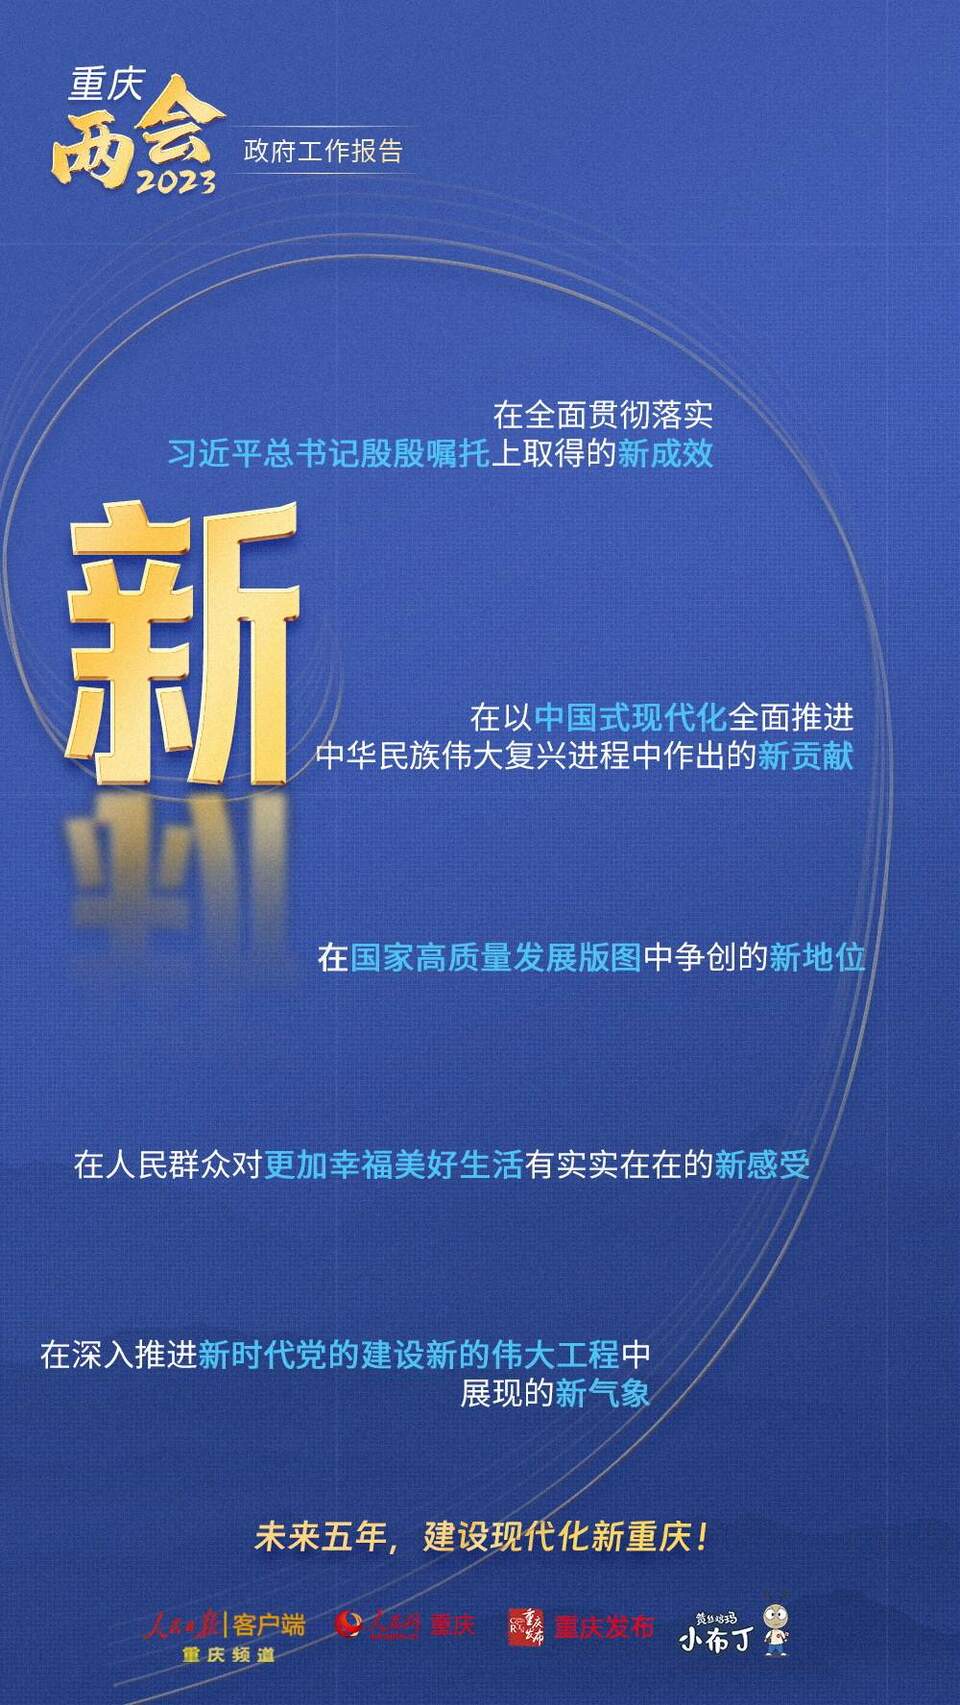 【转载】干货！图解梳理2023年重庆市政府工作报告